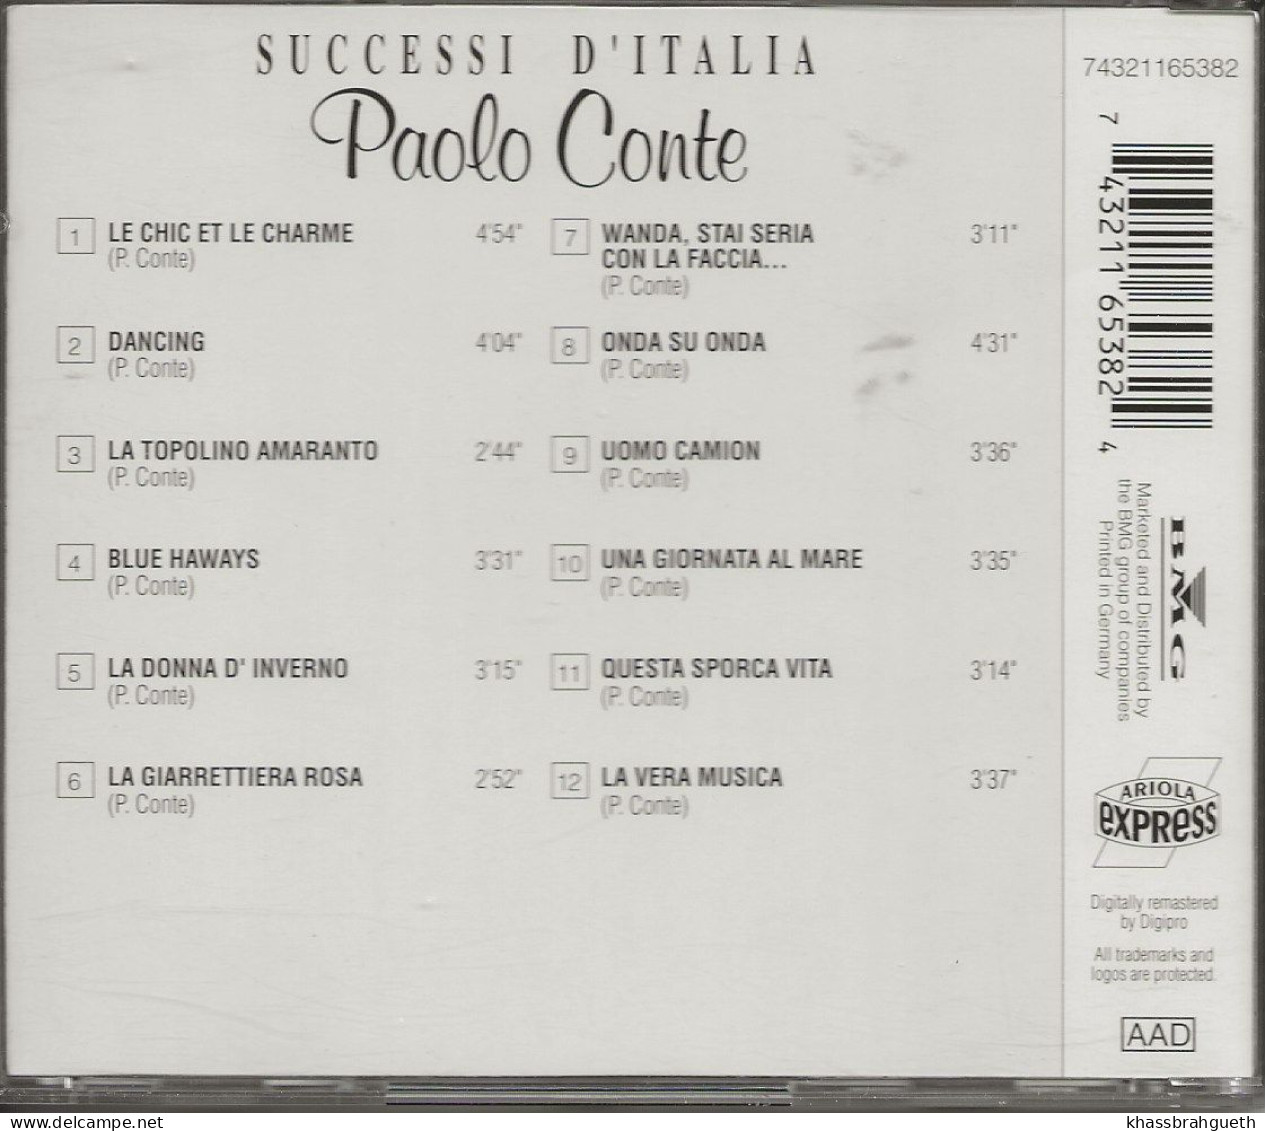 PAOLO CONTE - SUCCESSI D'ITALIA - ARIOLA (1993) (CD ALBUM) - Other - Italian Music